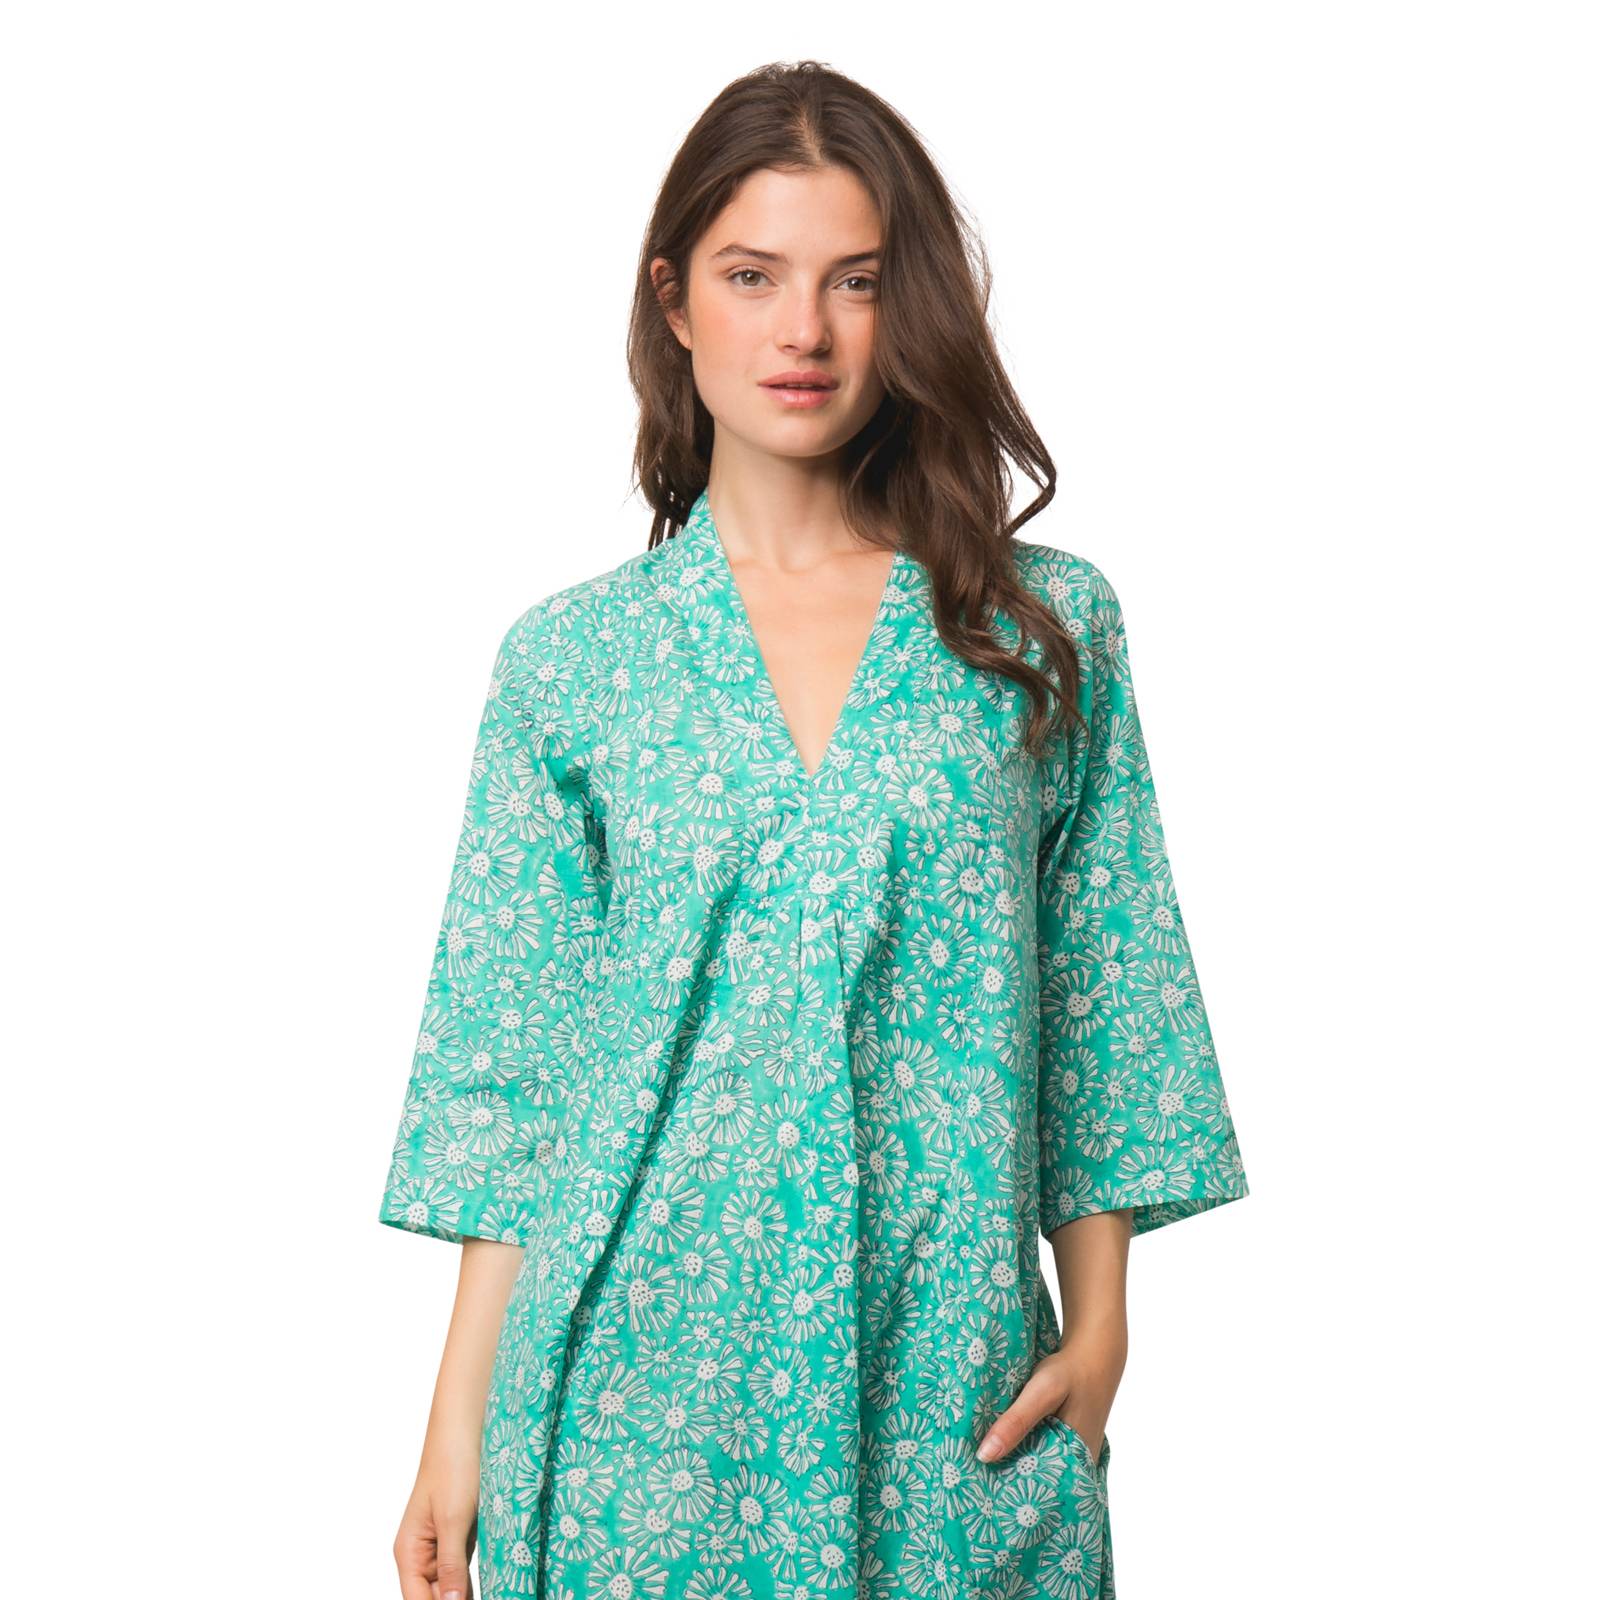 Robes Robe Mia Aster100% Coton bio Ethnique VR4136 GREEN